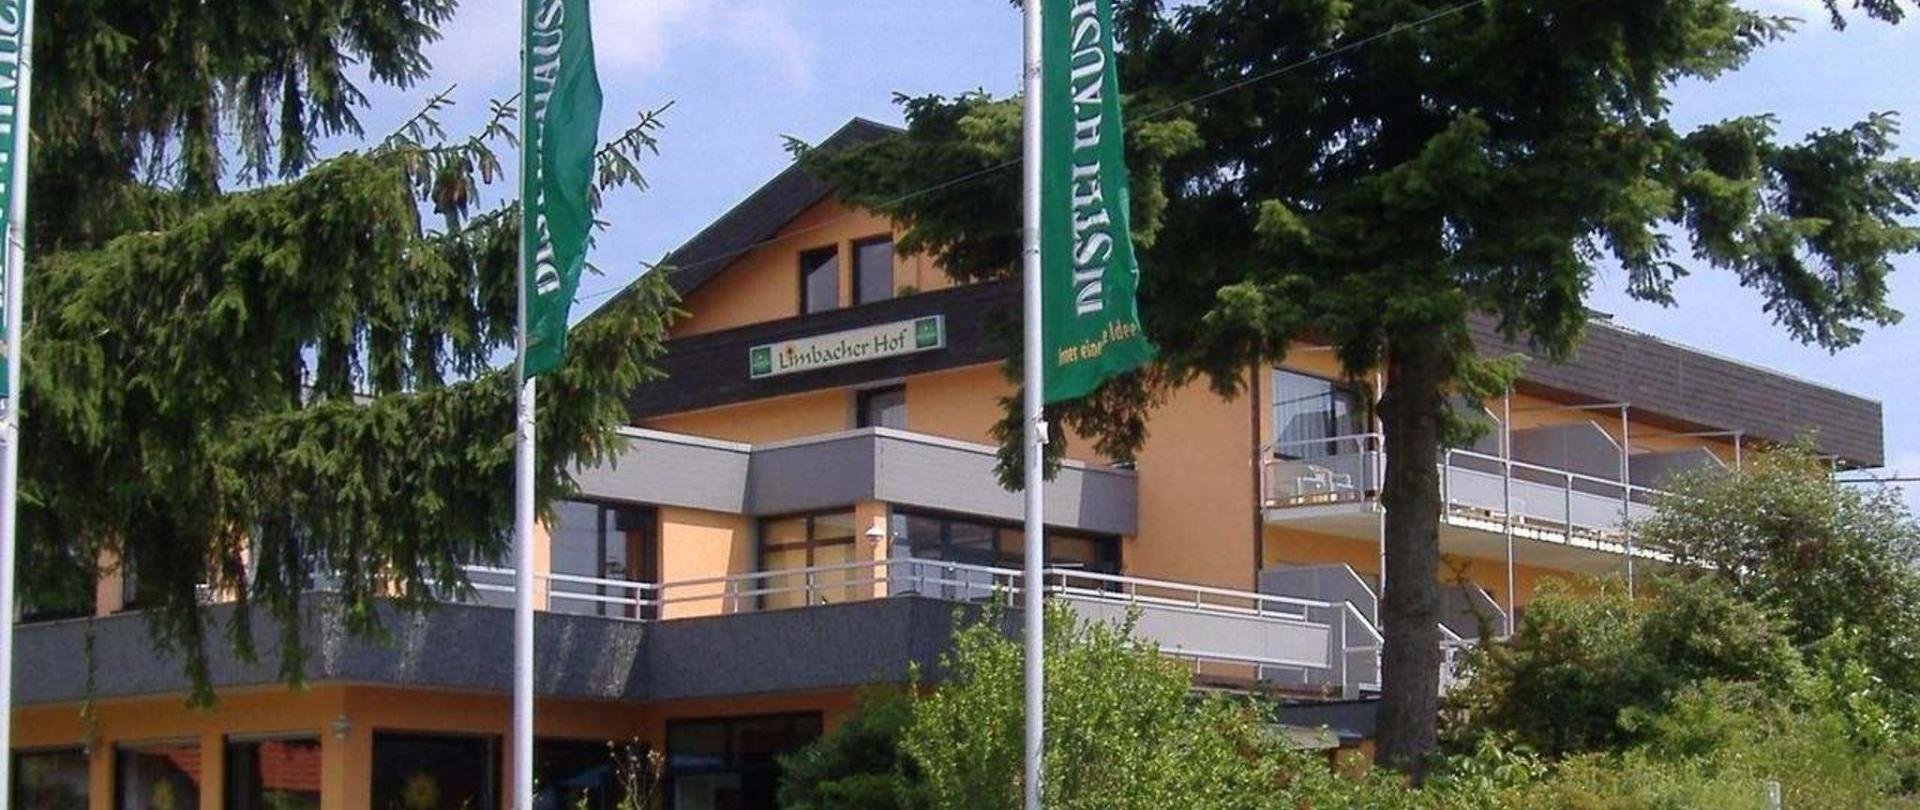 6 Tage Aktivtage im Odenwald inkl. Halbpension – Hotel Limbacher Hof , Baden-Württemberg inkl. Halbpension